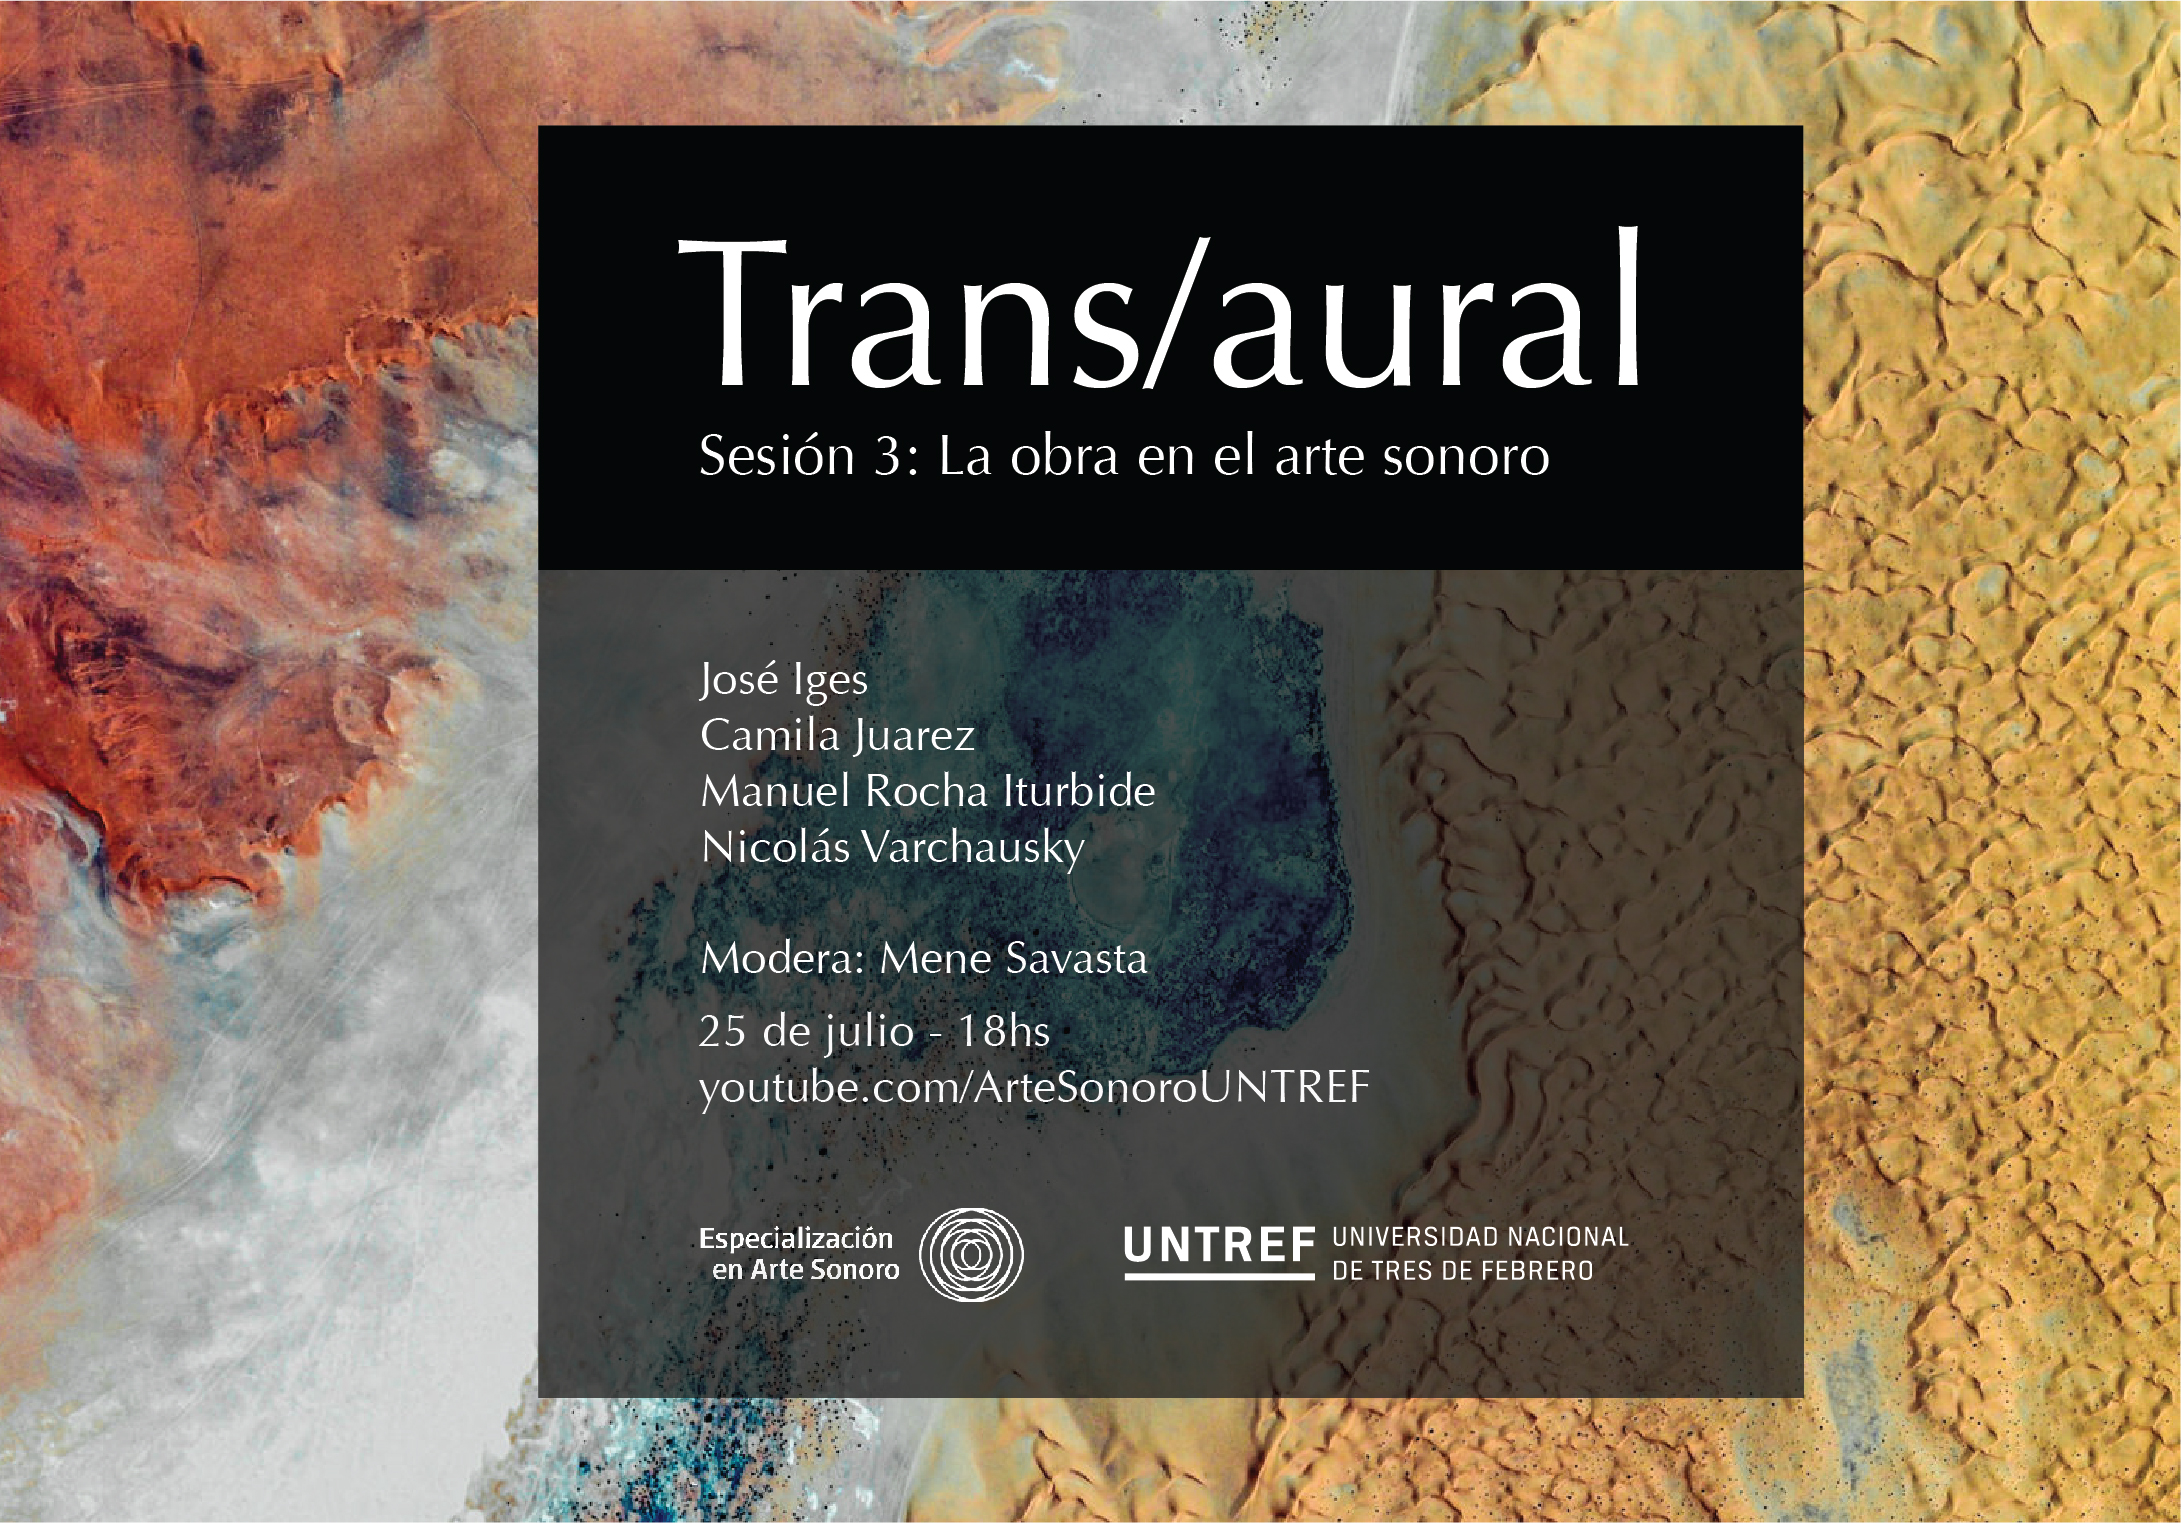 Trans/aural | Sesión virtual sobre arte sonoro con José Iges